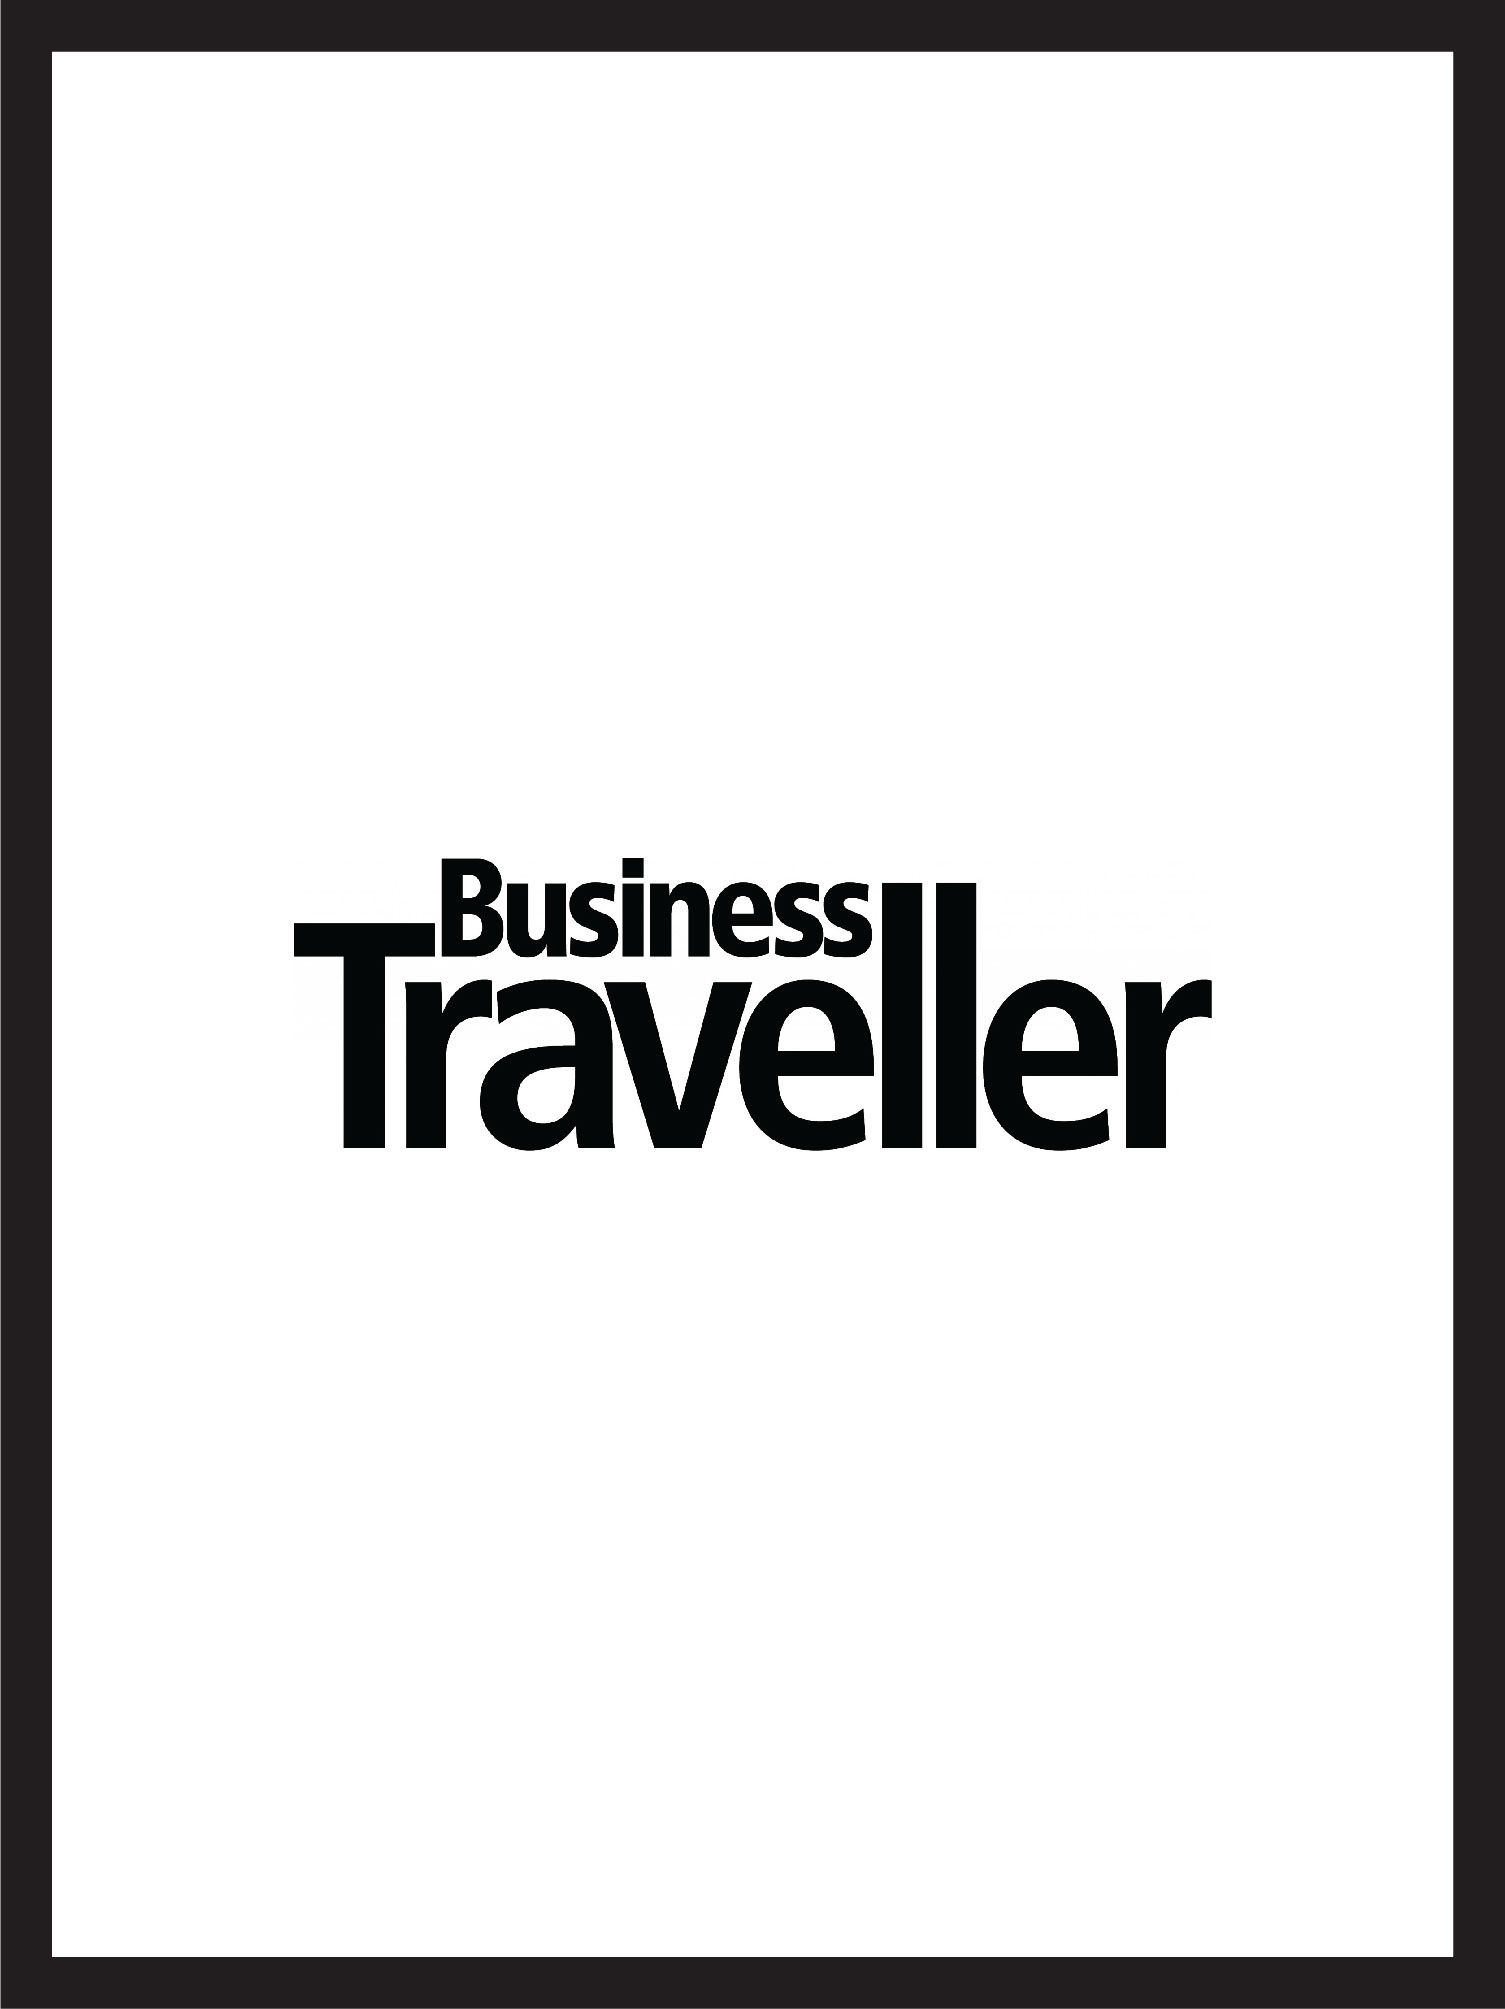 couverture et logo business traveller